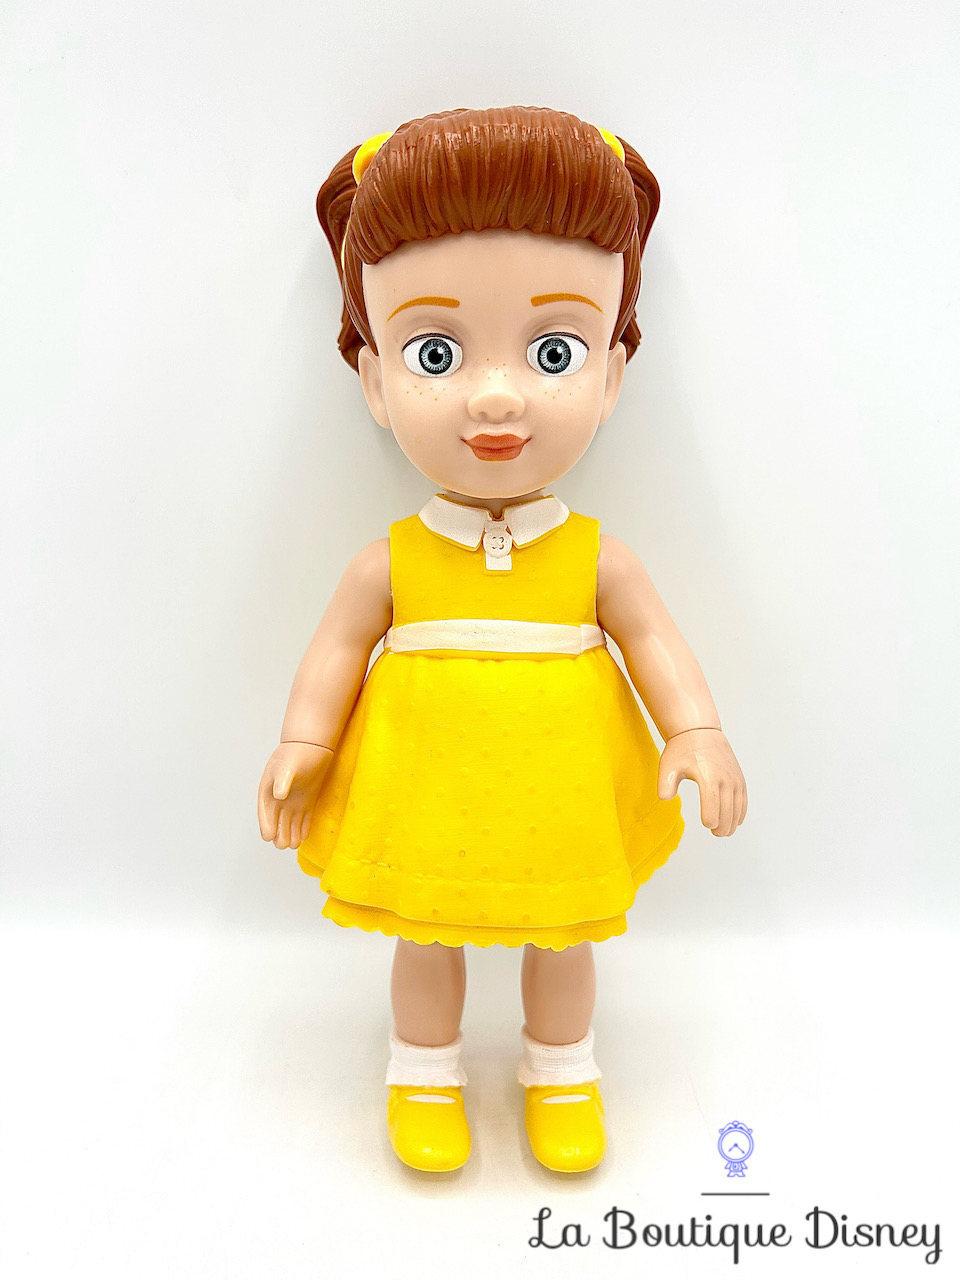 Jouet Figurine Gabby Gabby Toy Story 4 Disney Mattel 2019 poupée jaune 25 cm